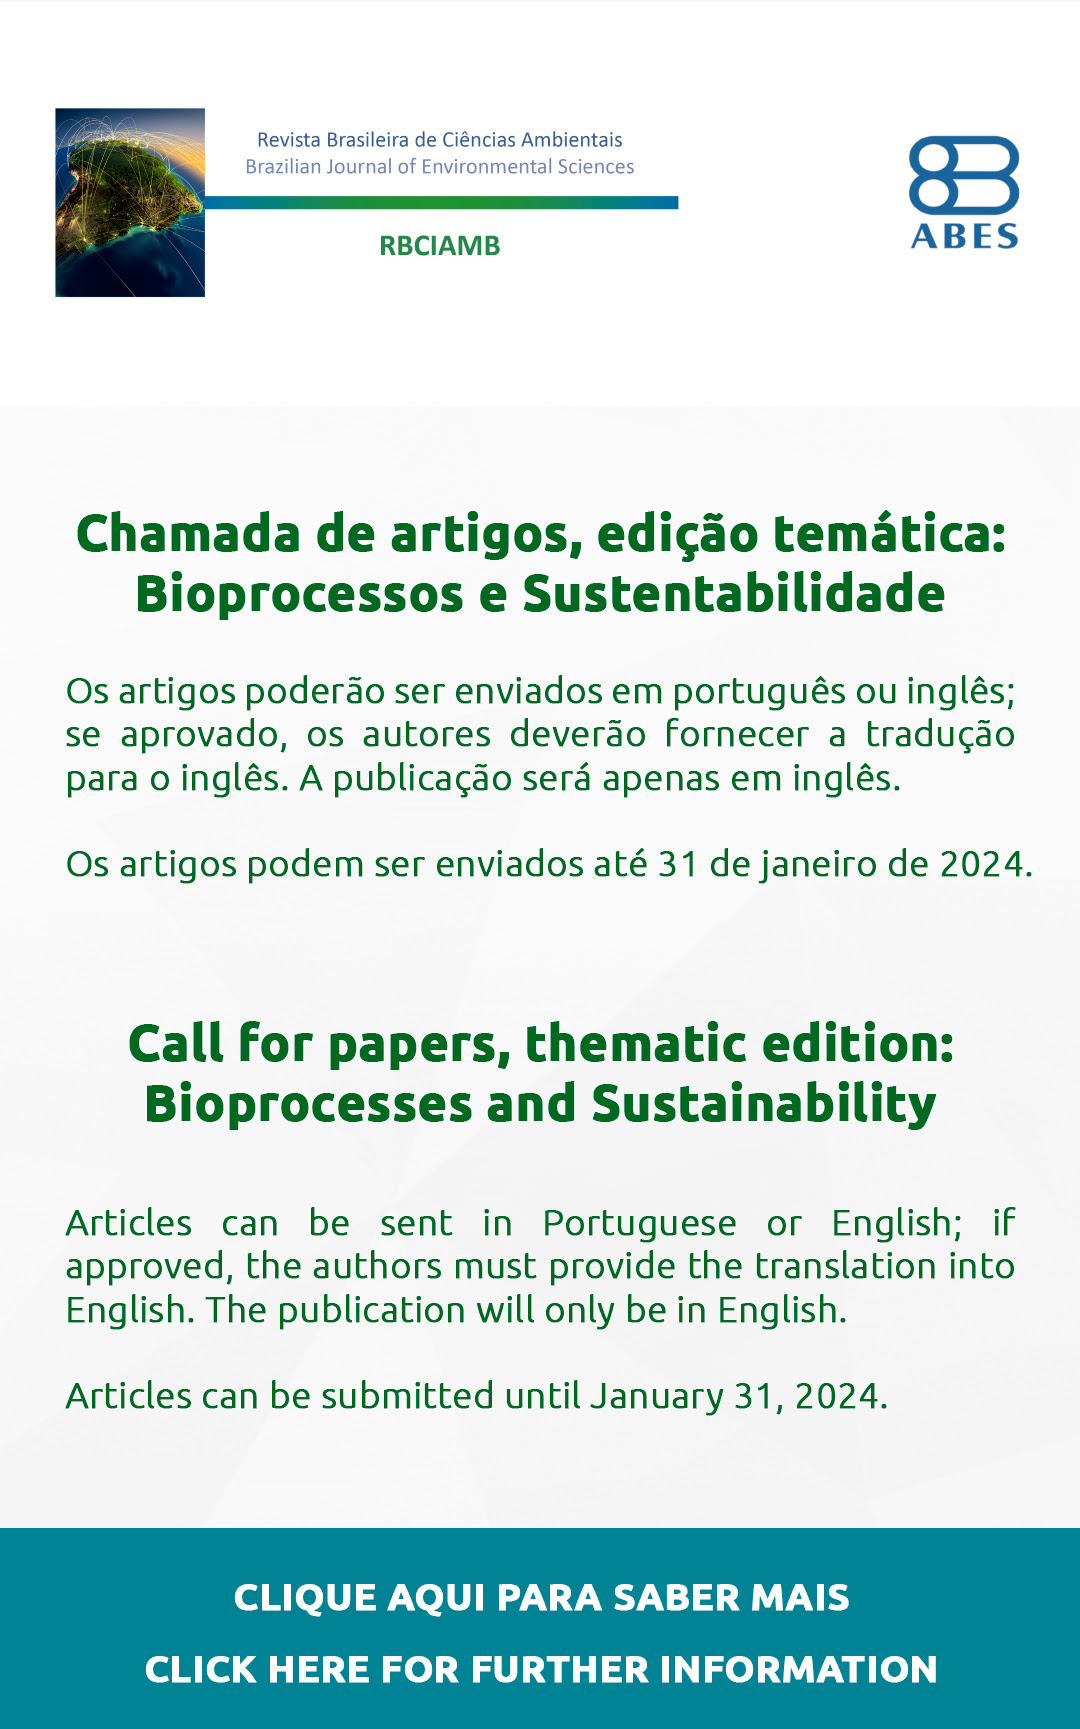 Revista Brasileira de Ciências Ambientais - Chamada de artigos - Call for paper